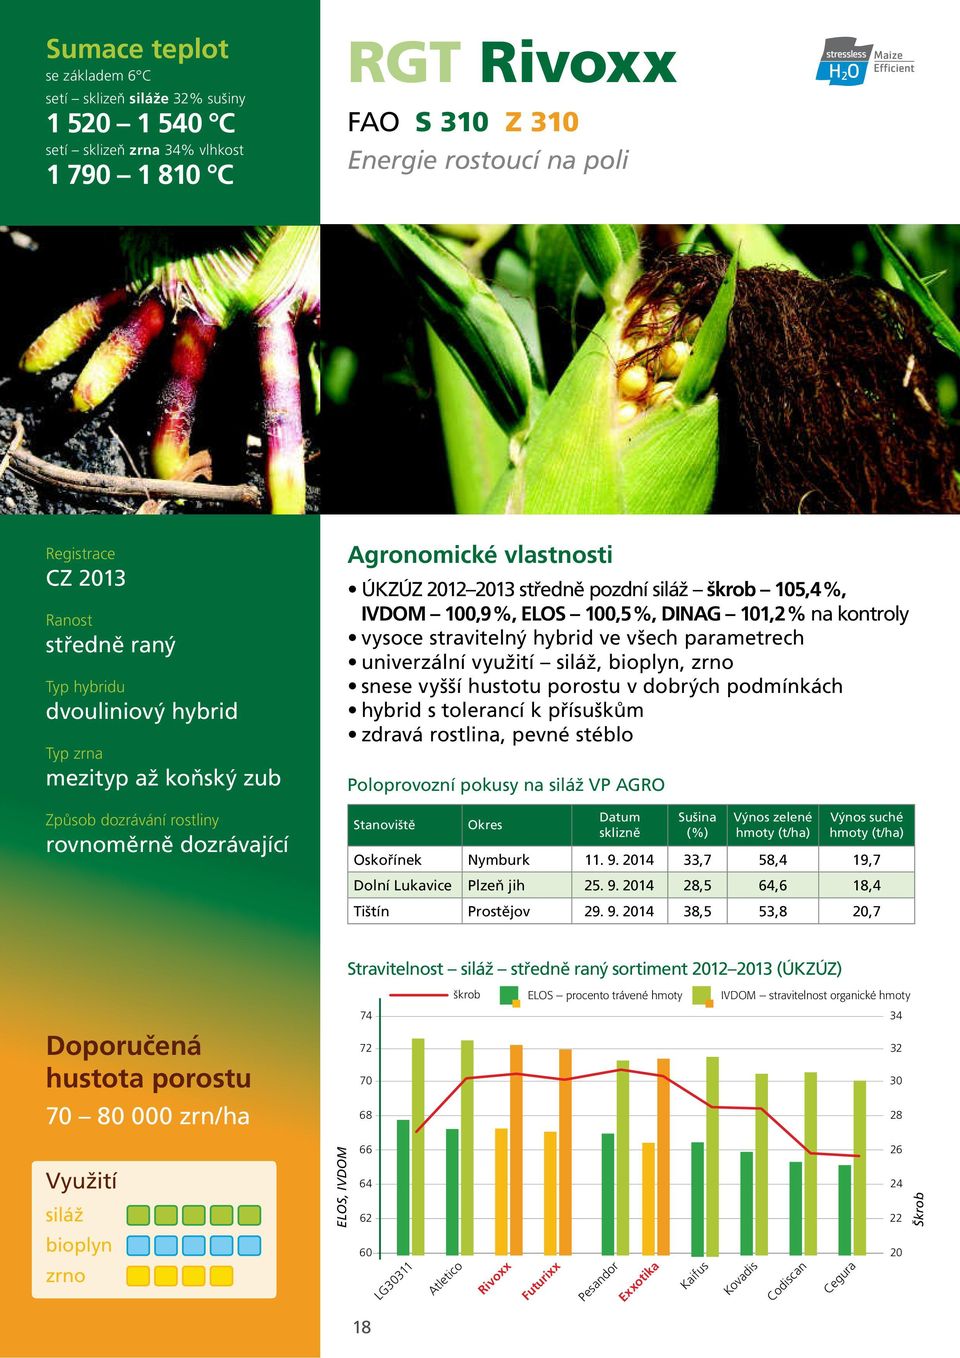 přísuškům zdravá rostlina, pevné stéblo Poloprovozní pokusy na VP AGRO Oskořínek Nymburk 11. 9.